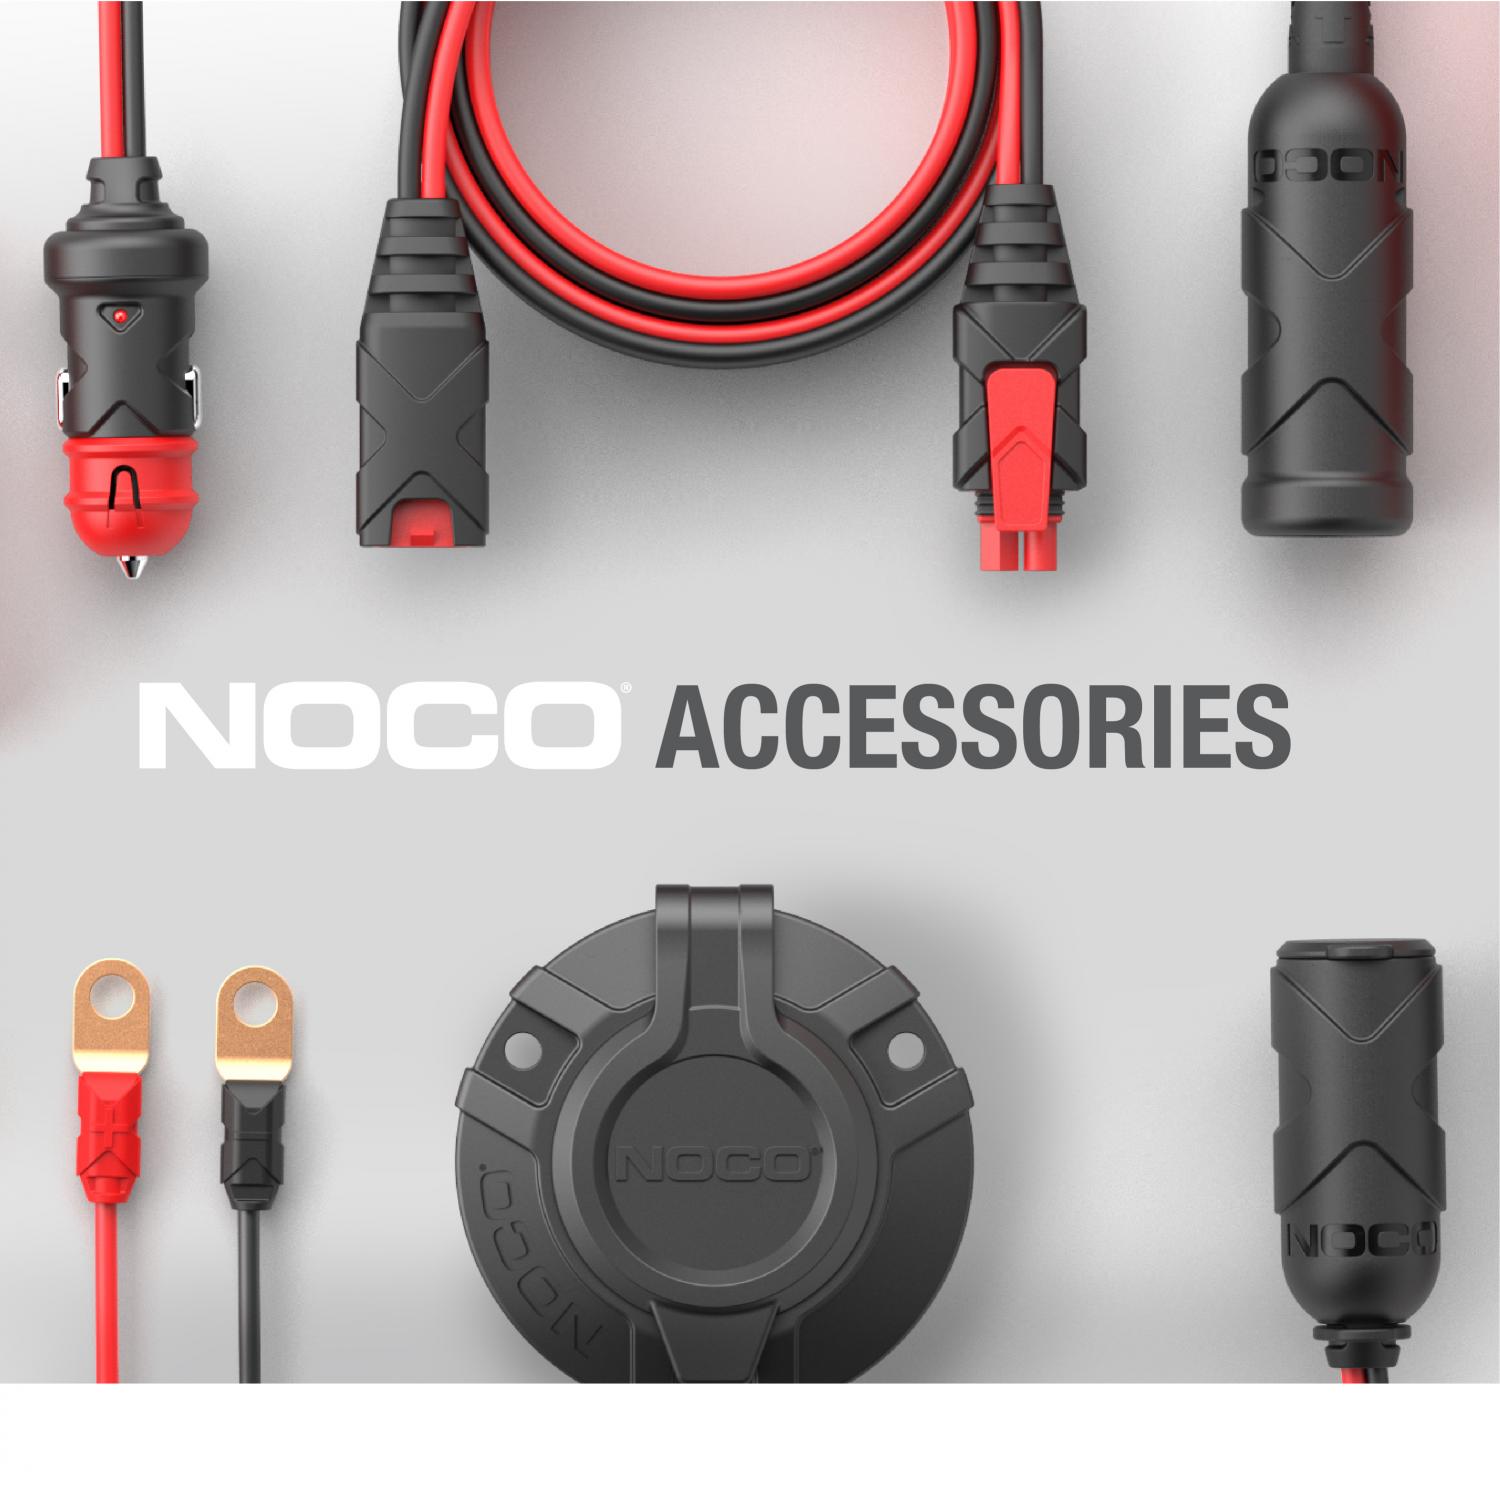 5V Netzteil (kompatibles Ersatznetzteil) oder Ladegerät für NOCO Jump  Starter GB20 500A, GB40 1000A